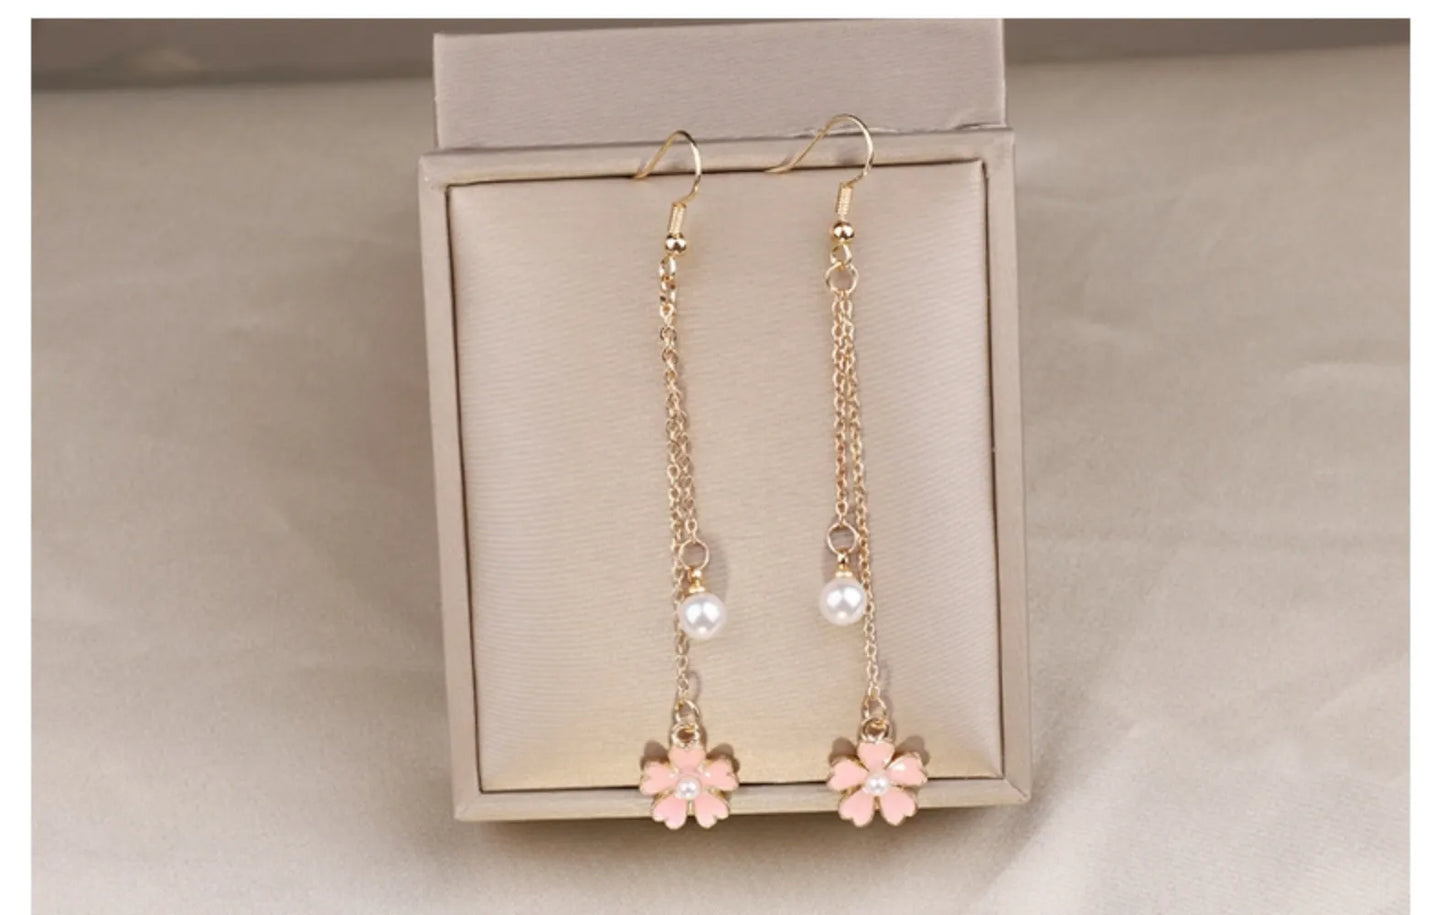 Elegant Pearl & Blossom Long Tassel Earrings